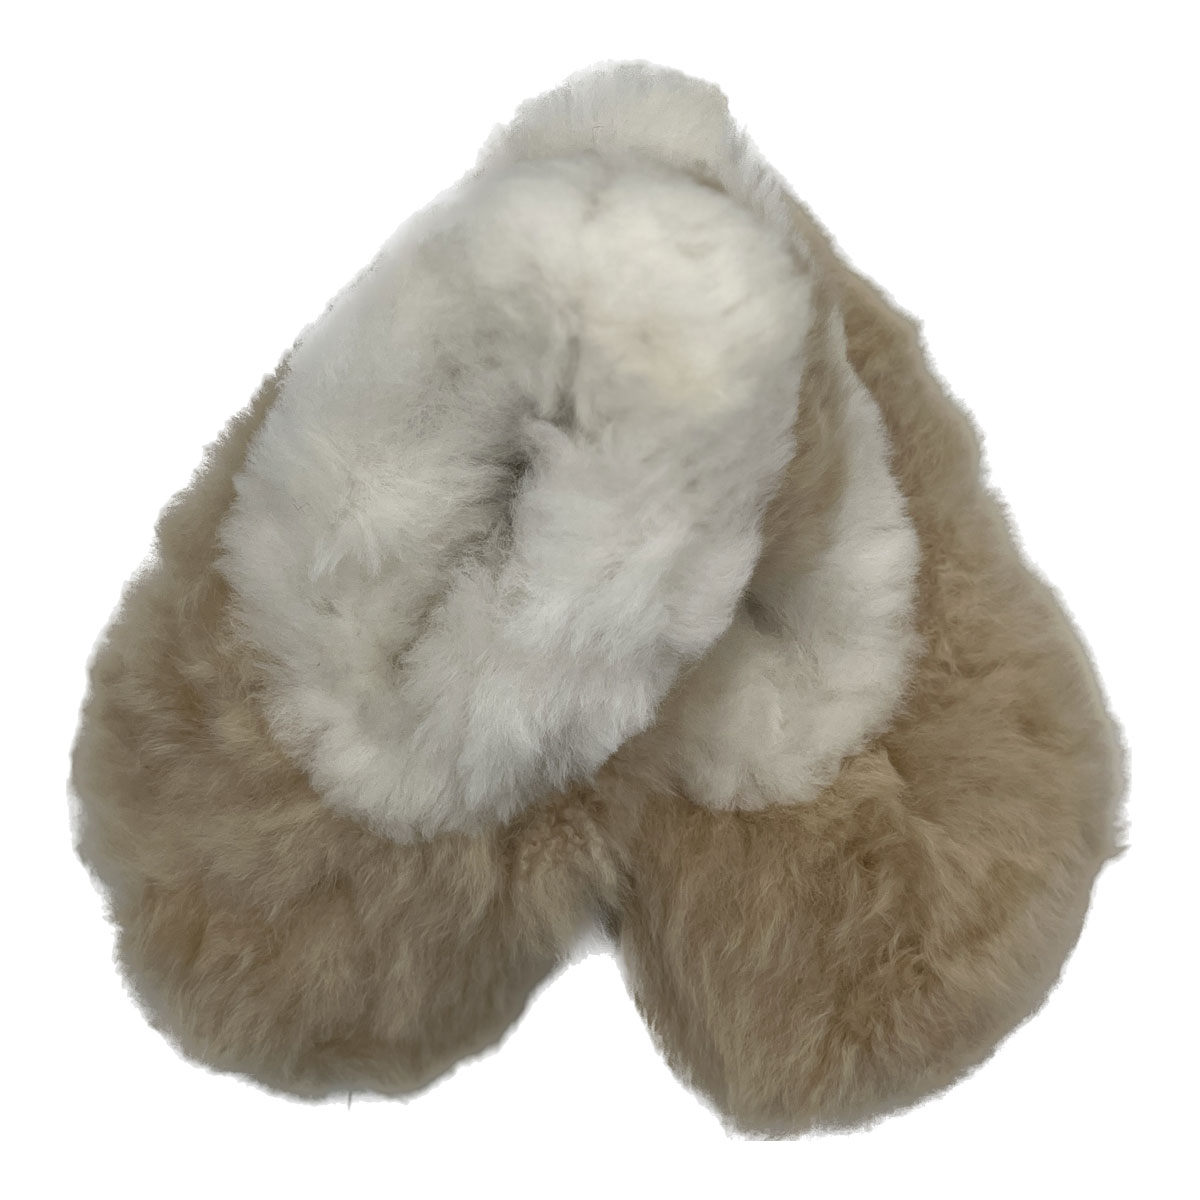 Black Alpaca fur slippers warm & soft – Peruvian Kani